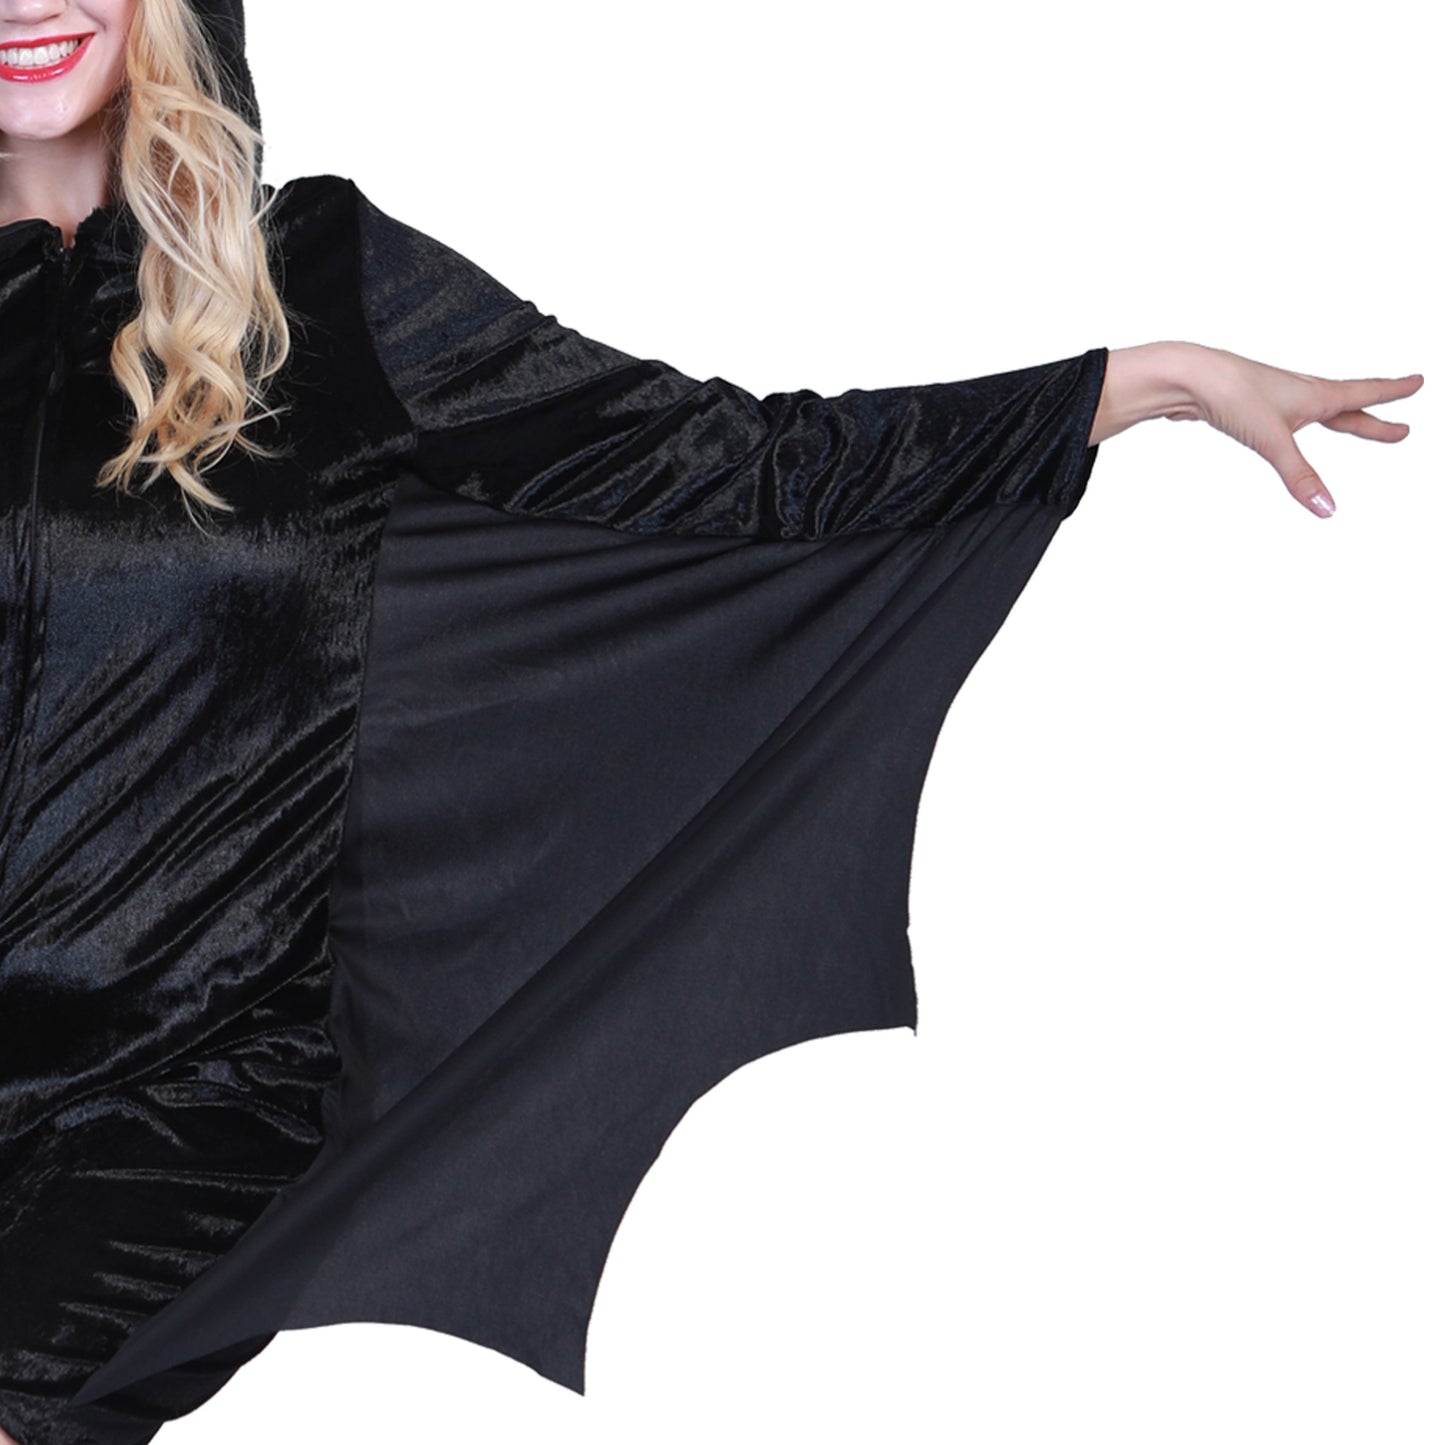 Halloween Bat Design Cosplay Costumes